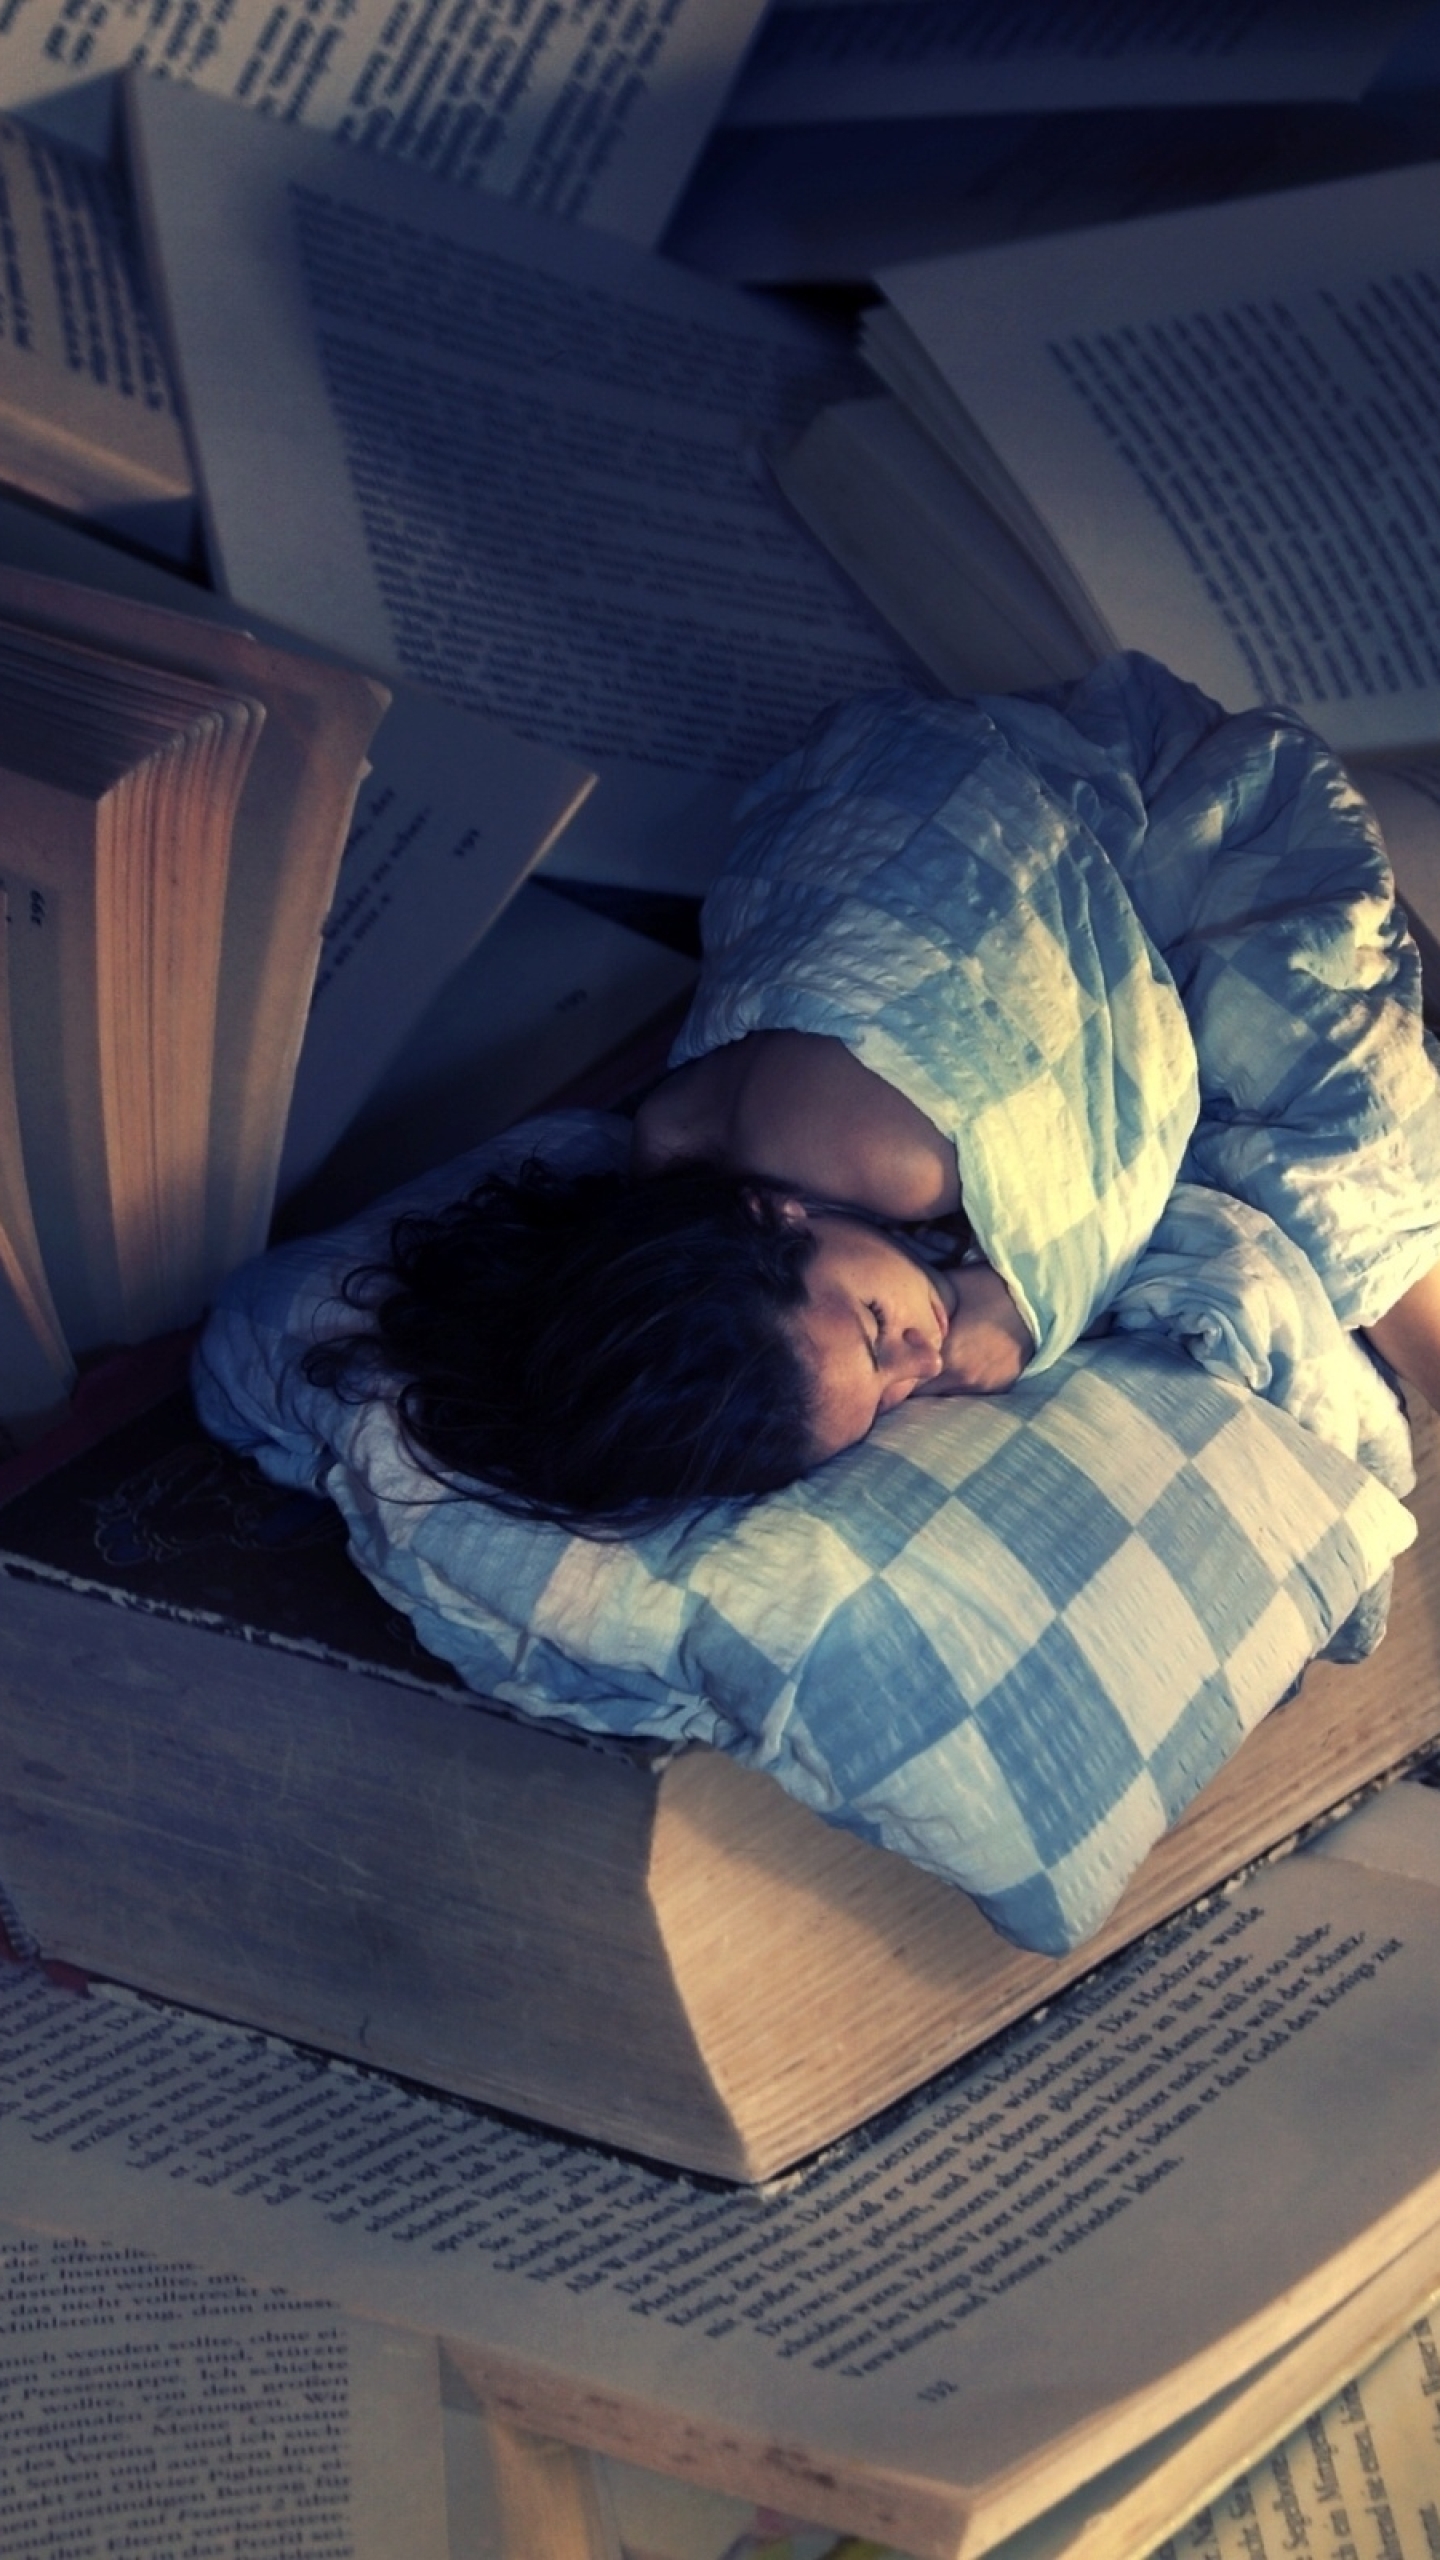 Читать книгу и спать. Спящий человек. Сон человека.